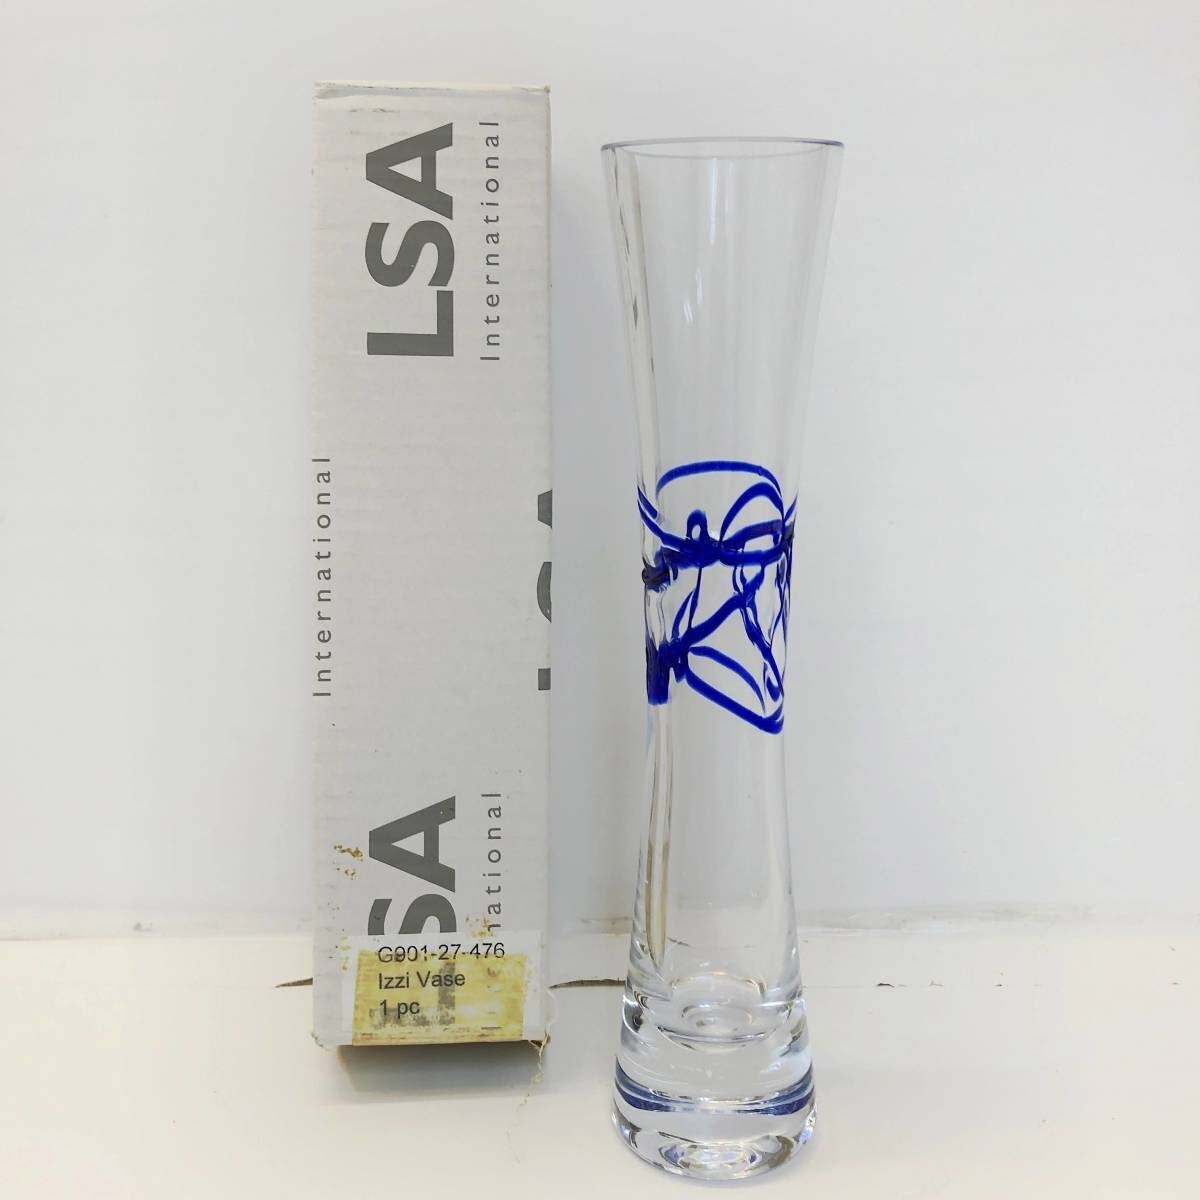 新款4.海军蓝LSA国际花瓶手工玻璃蓝色Izzi花瓶27cm波兰制造G901-27, 家具, 内部的, 内饰配件, 花瓶